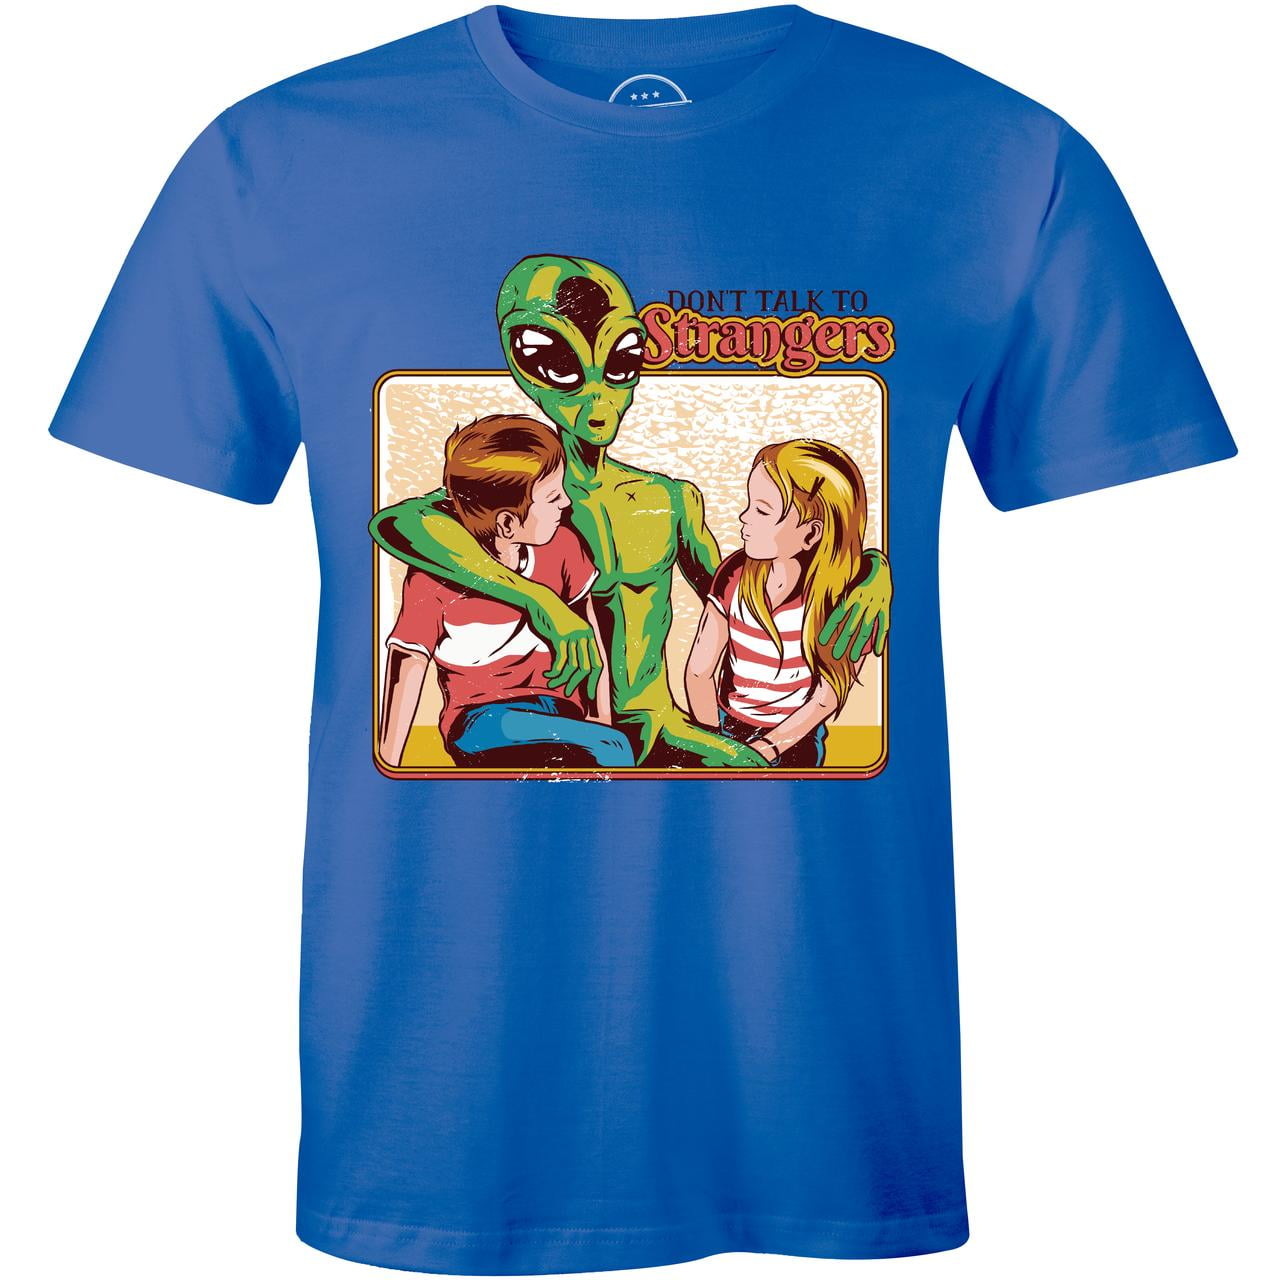 Alien T-Shirt | Predator | Unisex